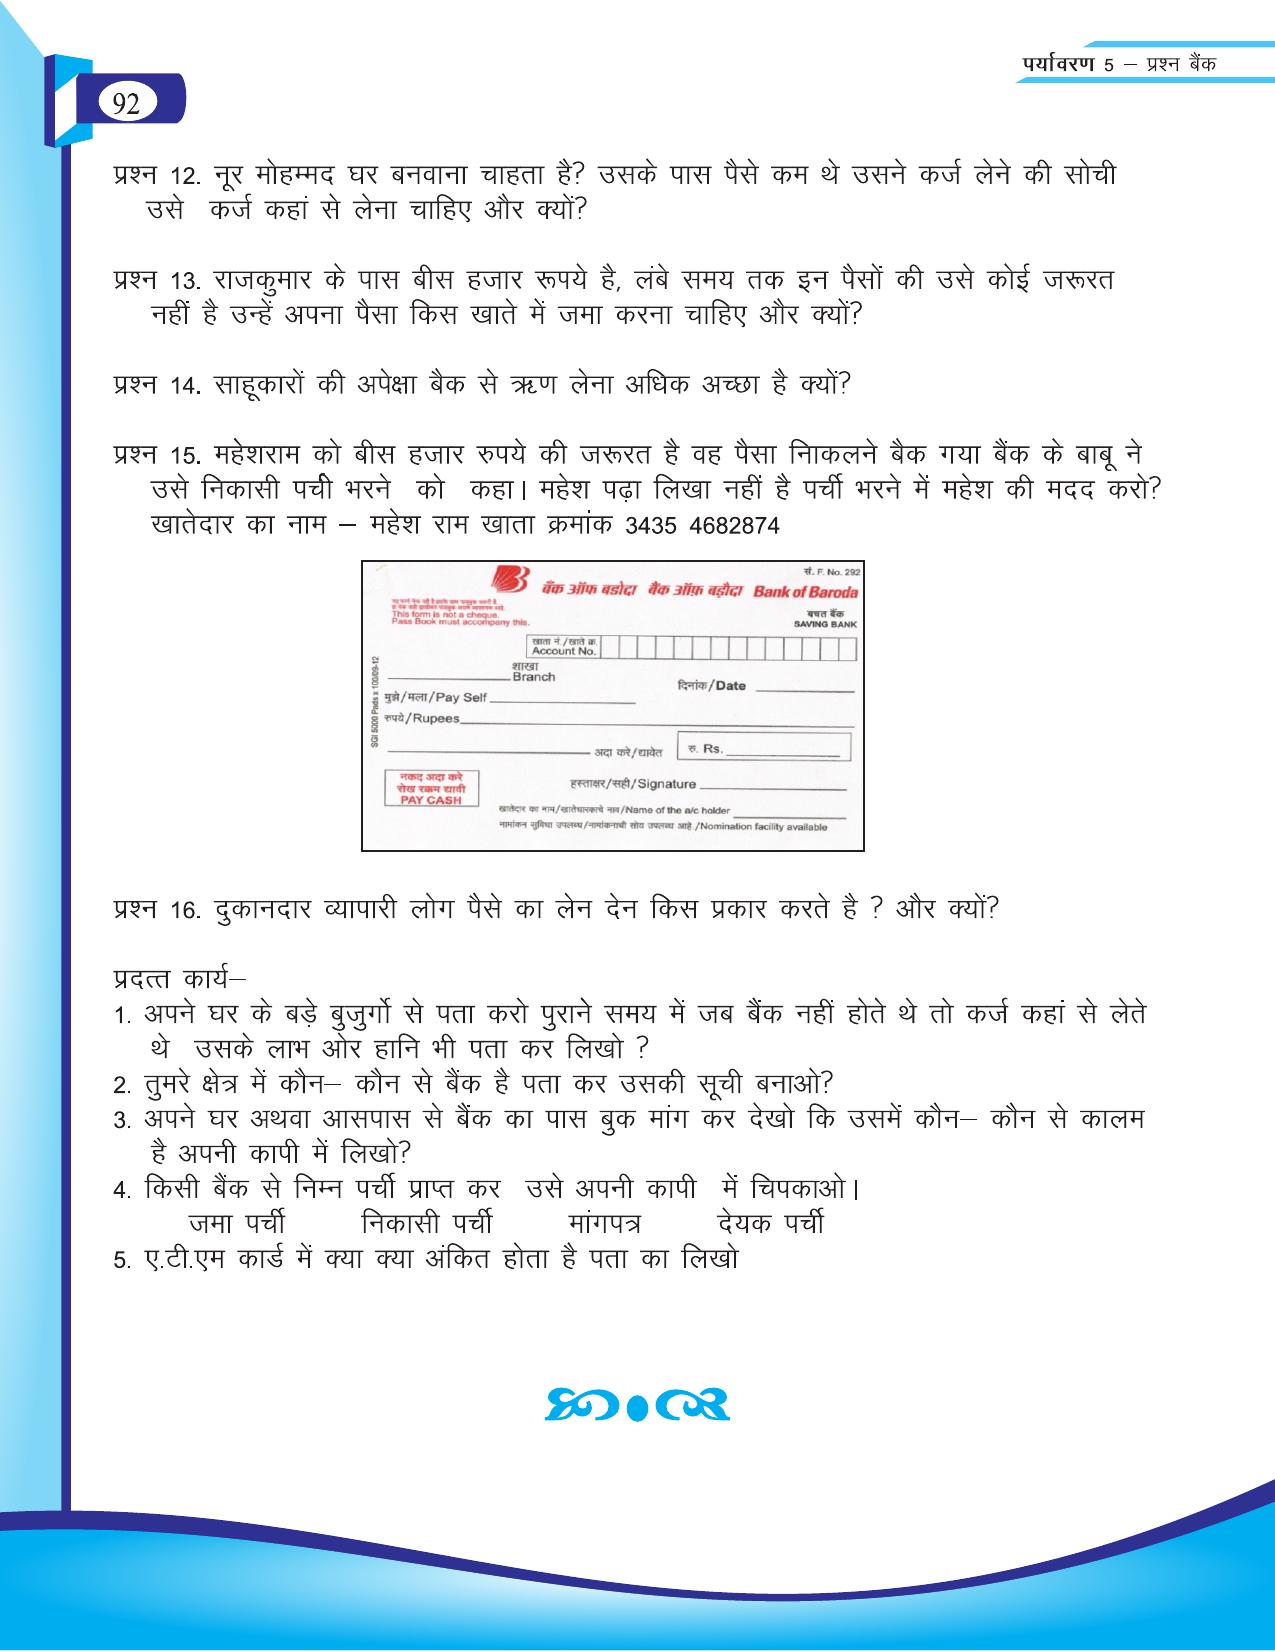 Chhattisgarh Board Class 5 EVS Question Bank 2015-16 - Page 18